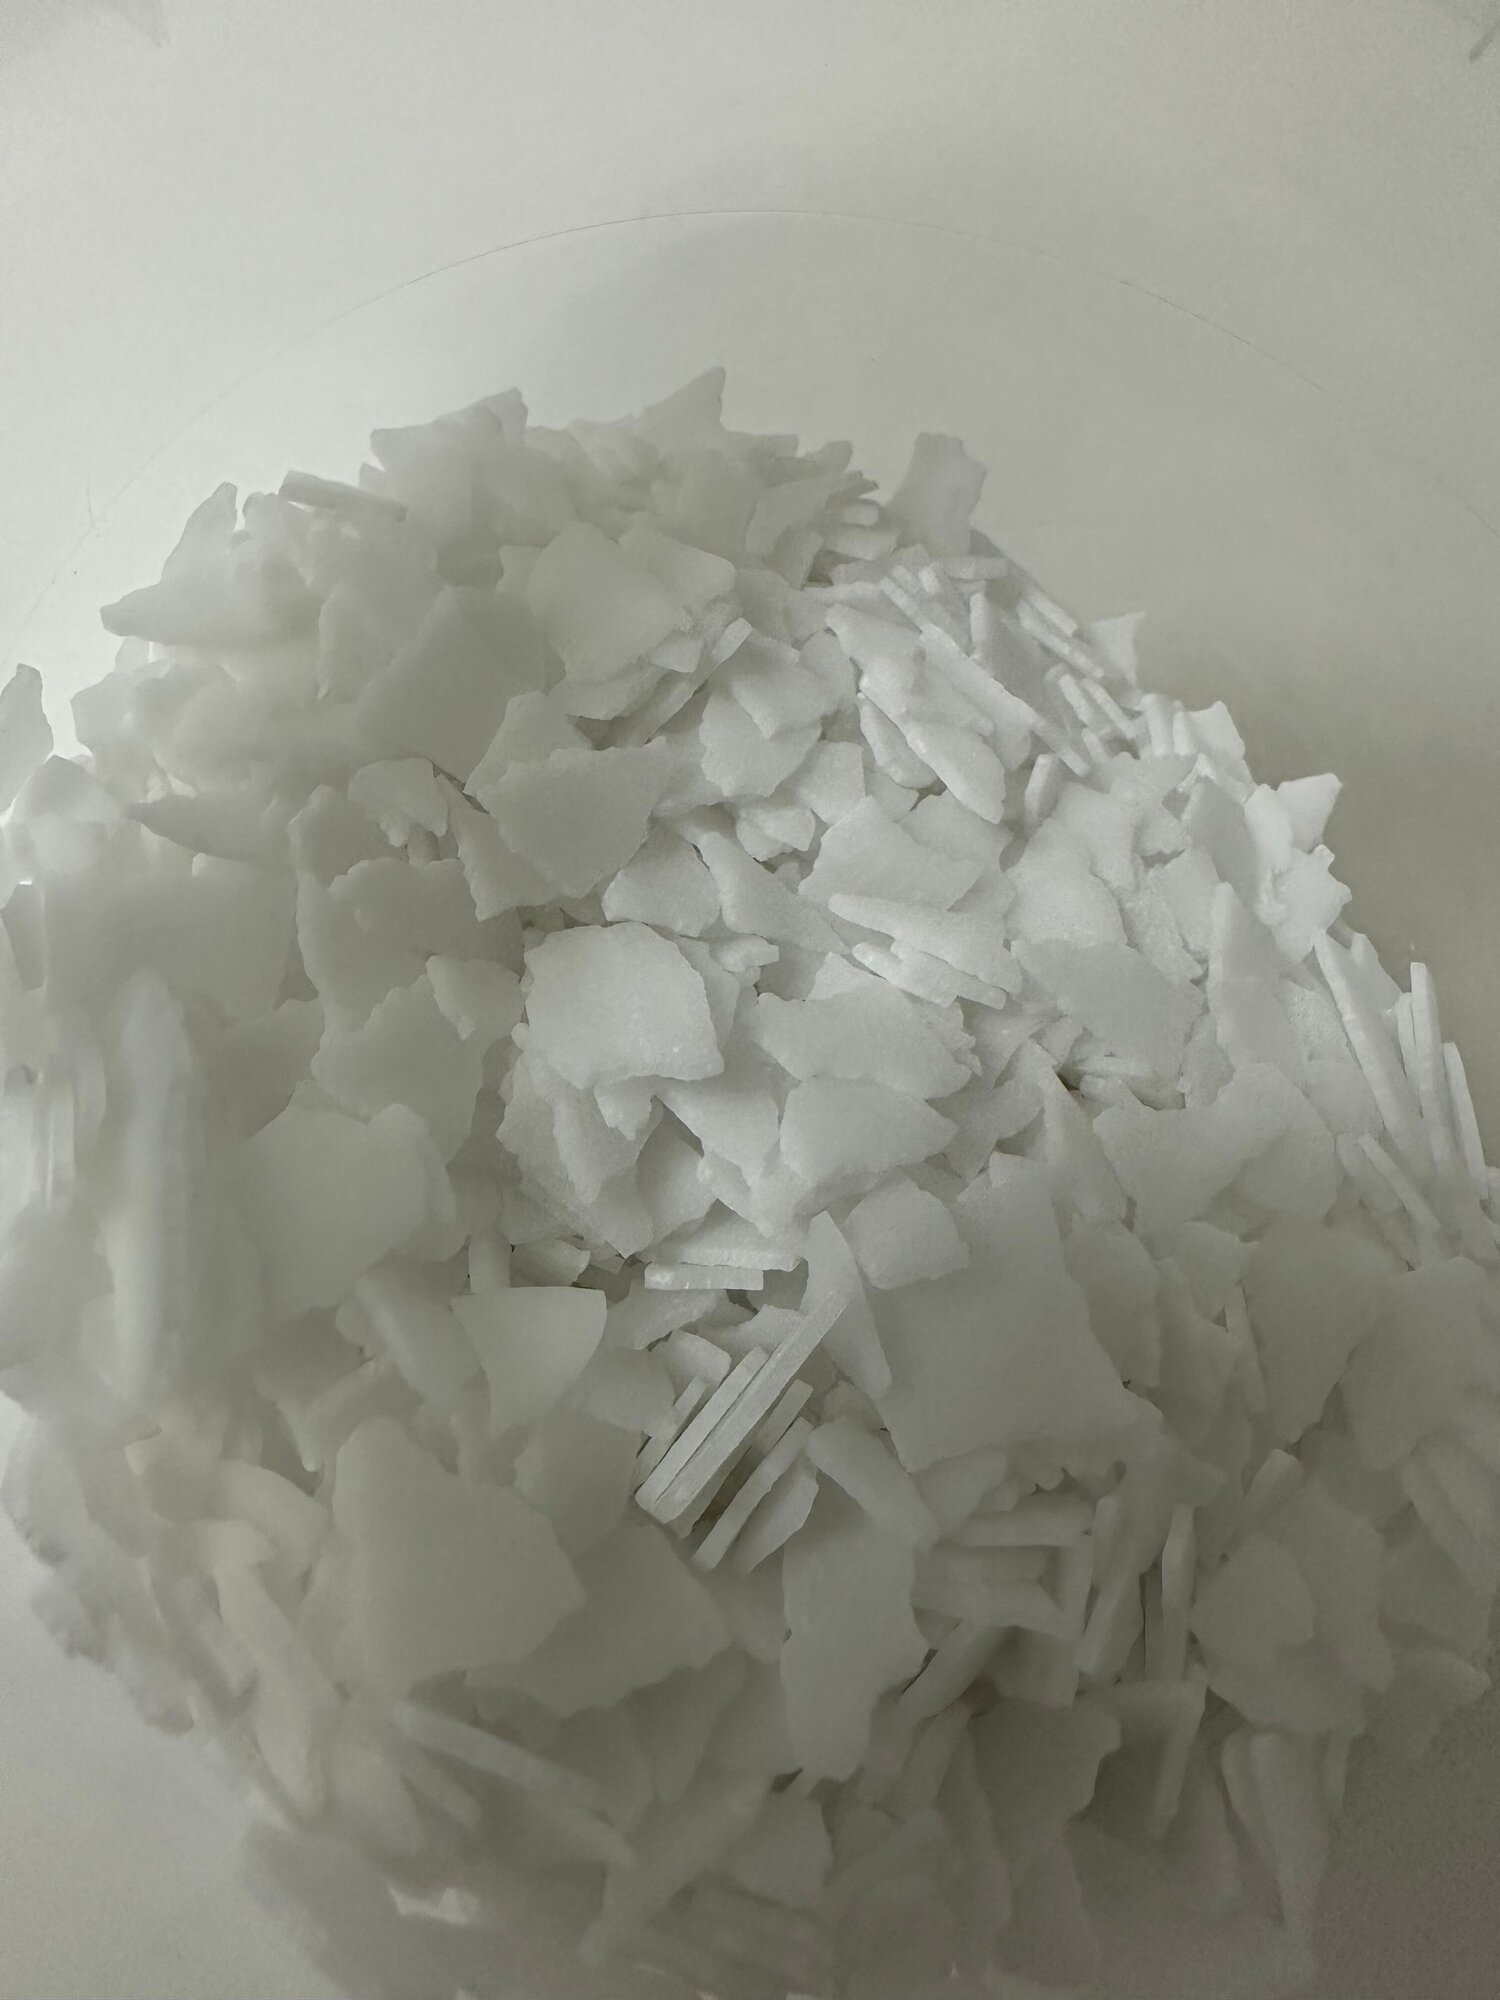 Гидроксид калия высшей очистки марка А ( 95,7%) (1КГ)